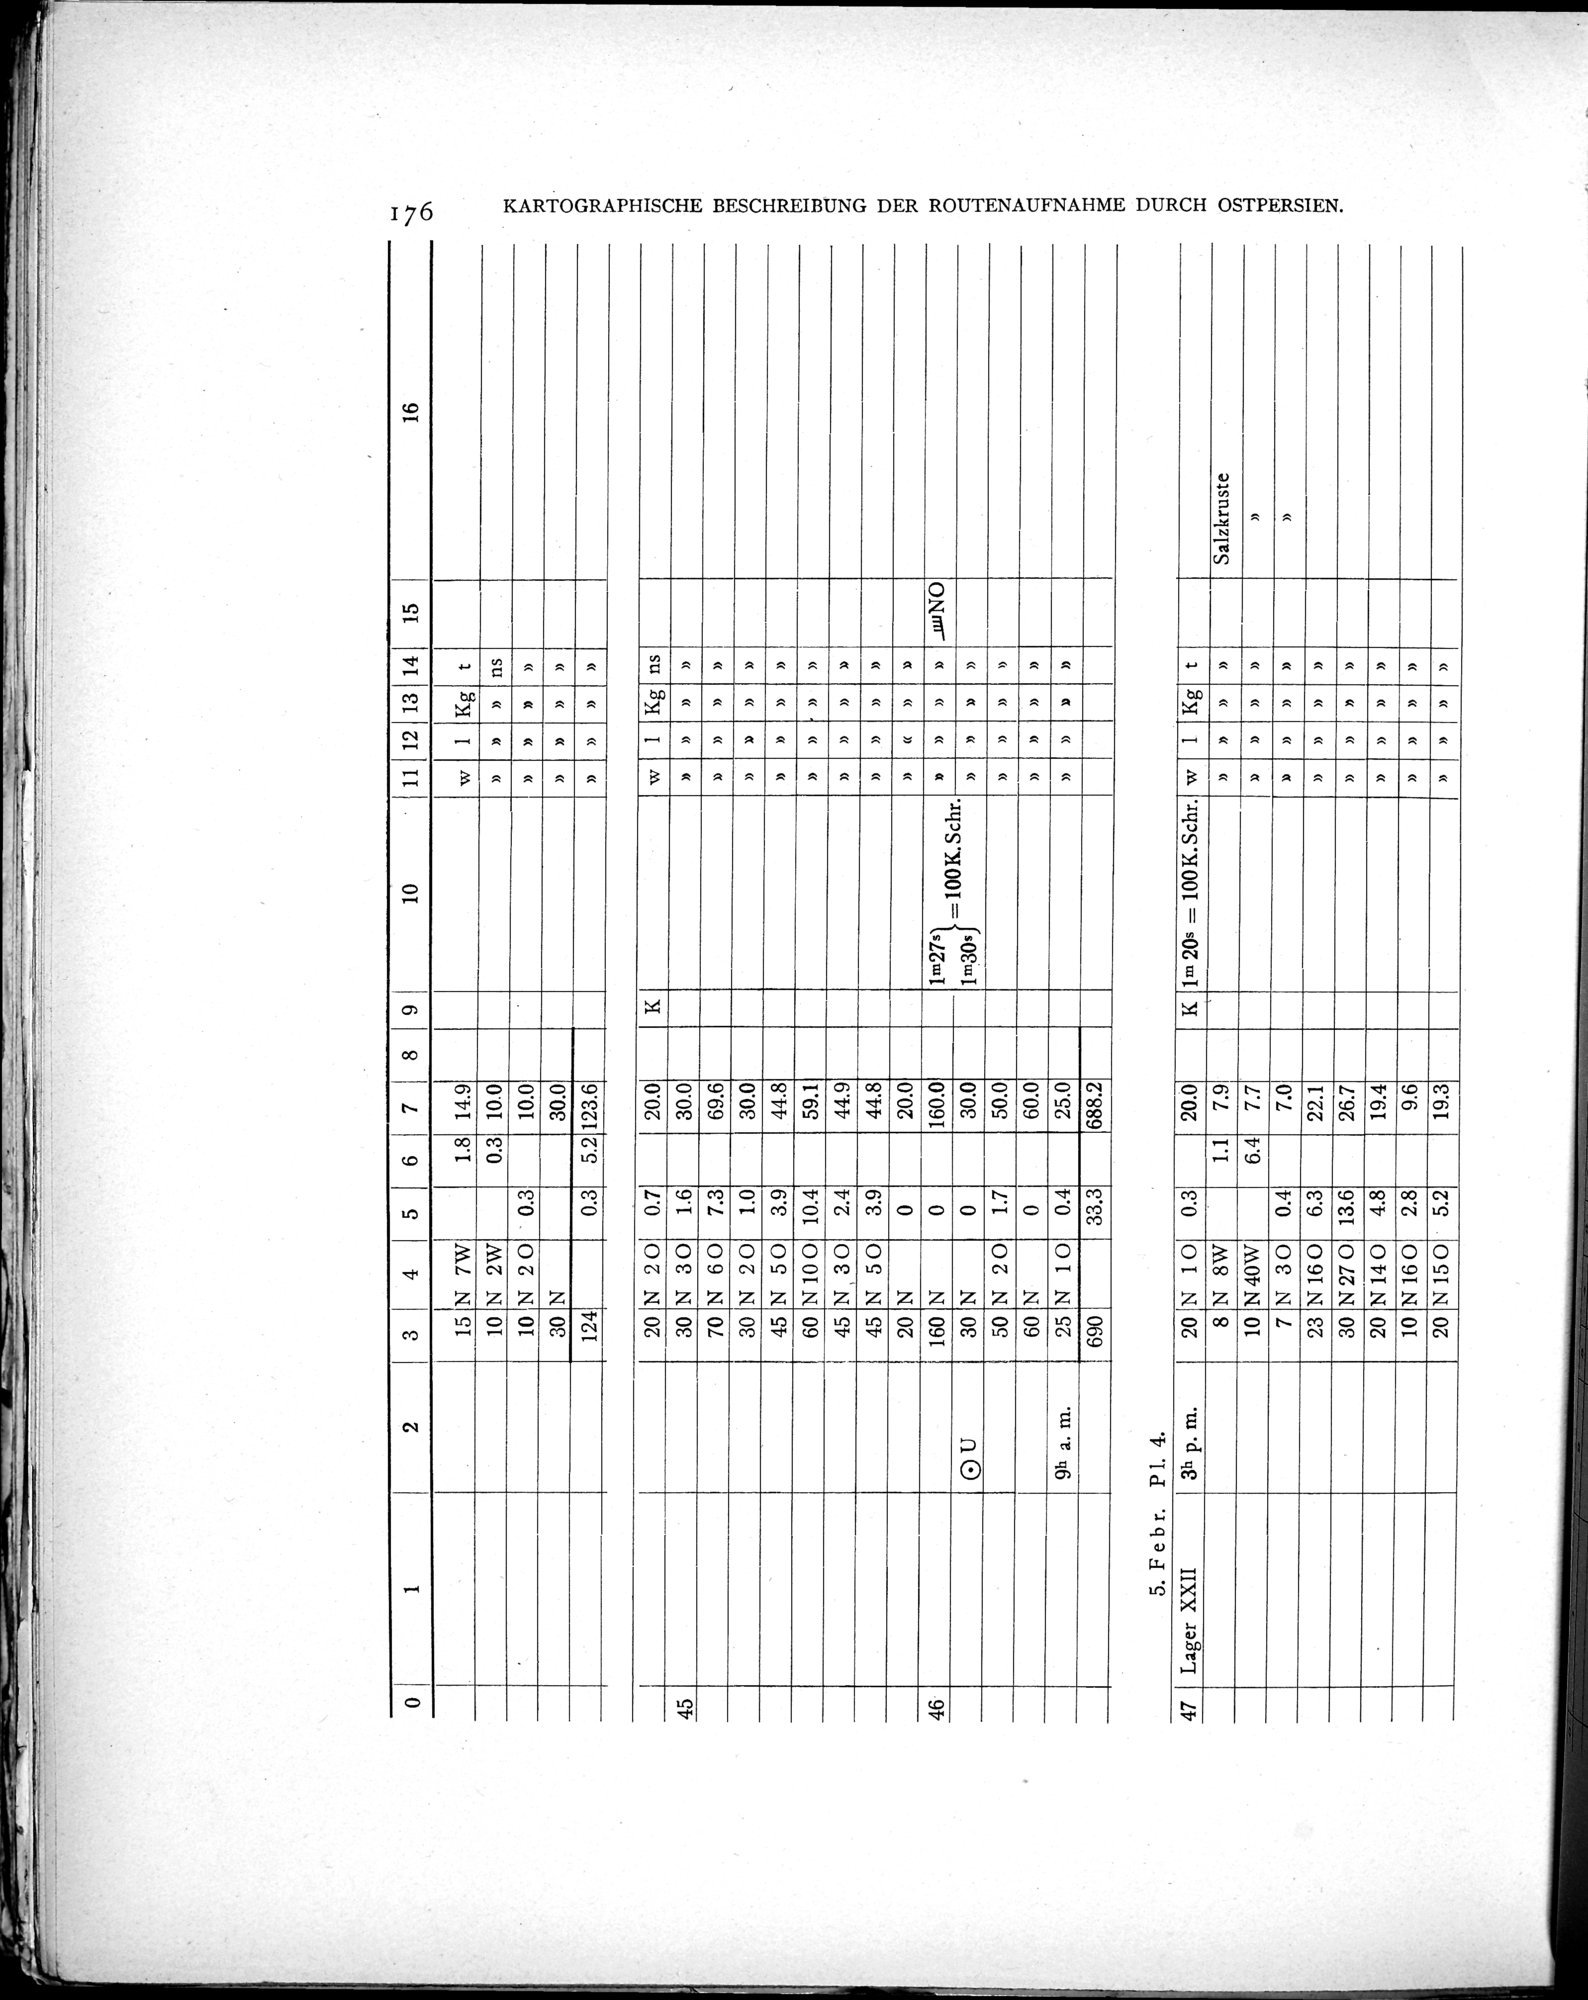 Eine Routenaufnahme durch Ostpersien : vol.2 / Page 246 (Grayscale High Resolution Image)